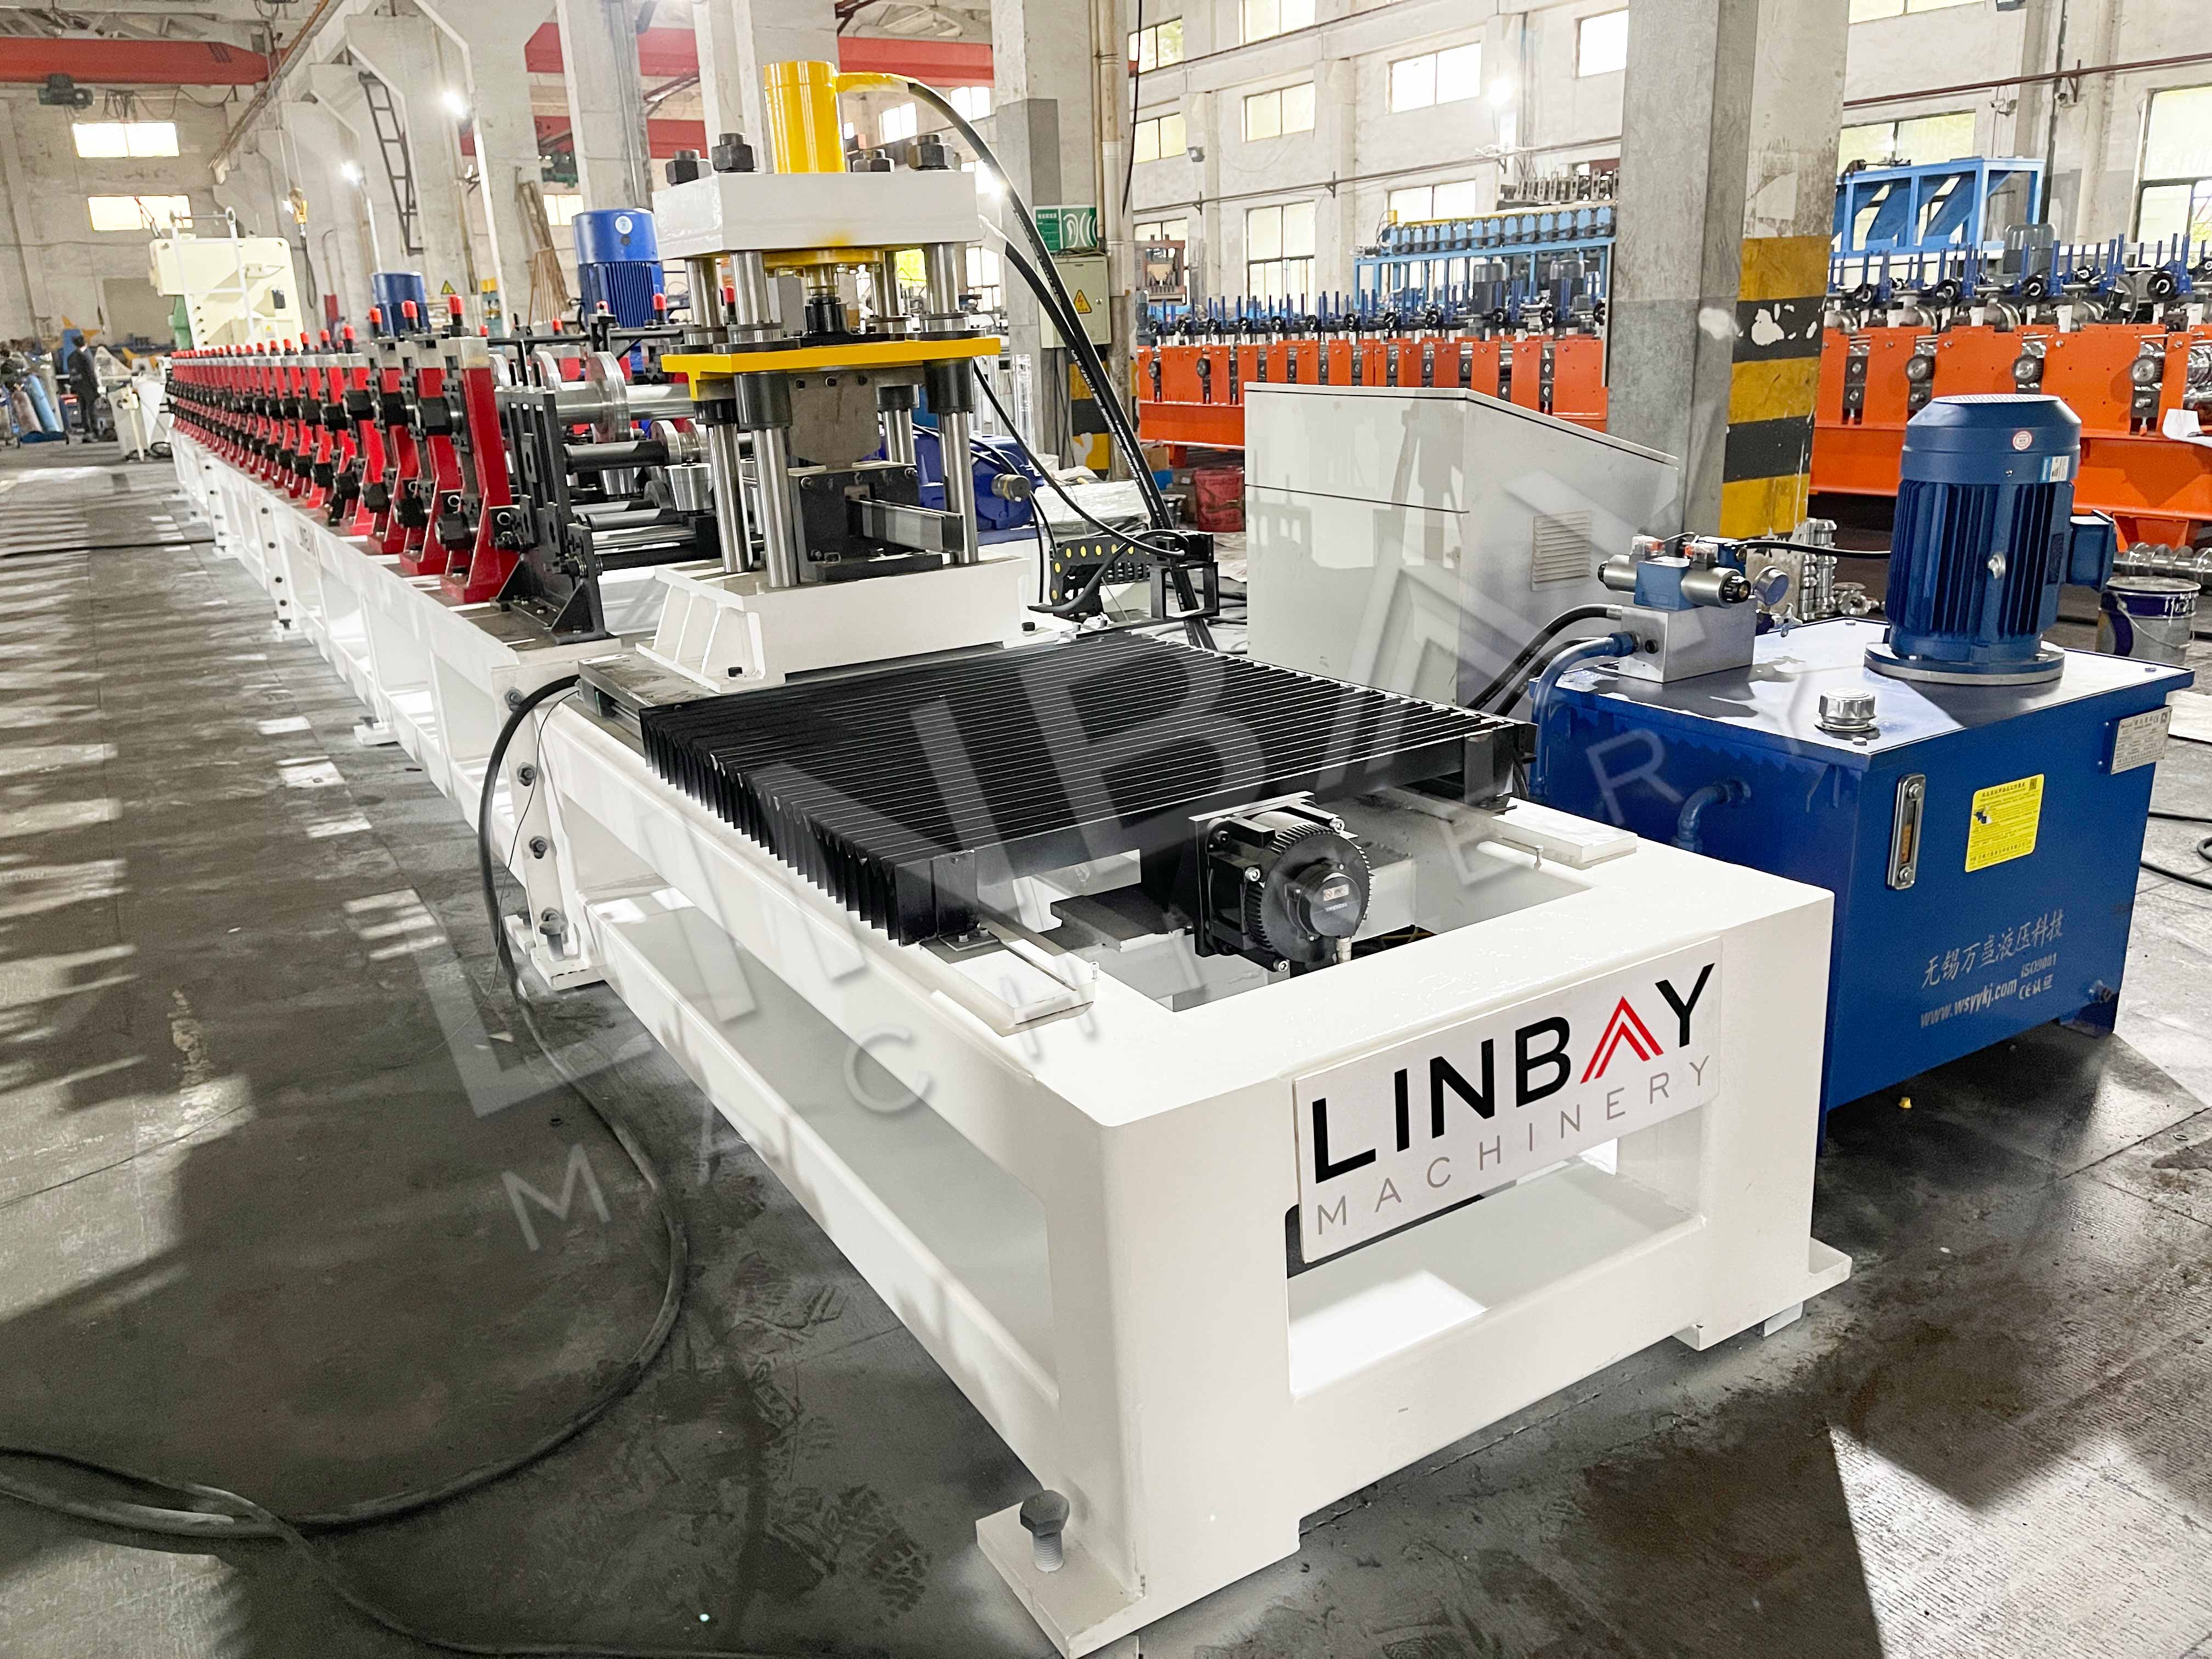 LINBAY-Exporta Máquina Conformadora na Máquina de Corte Longitudinal hadi Iraq